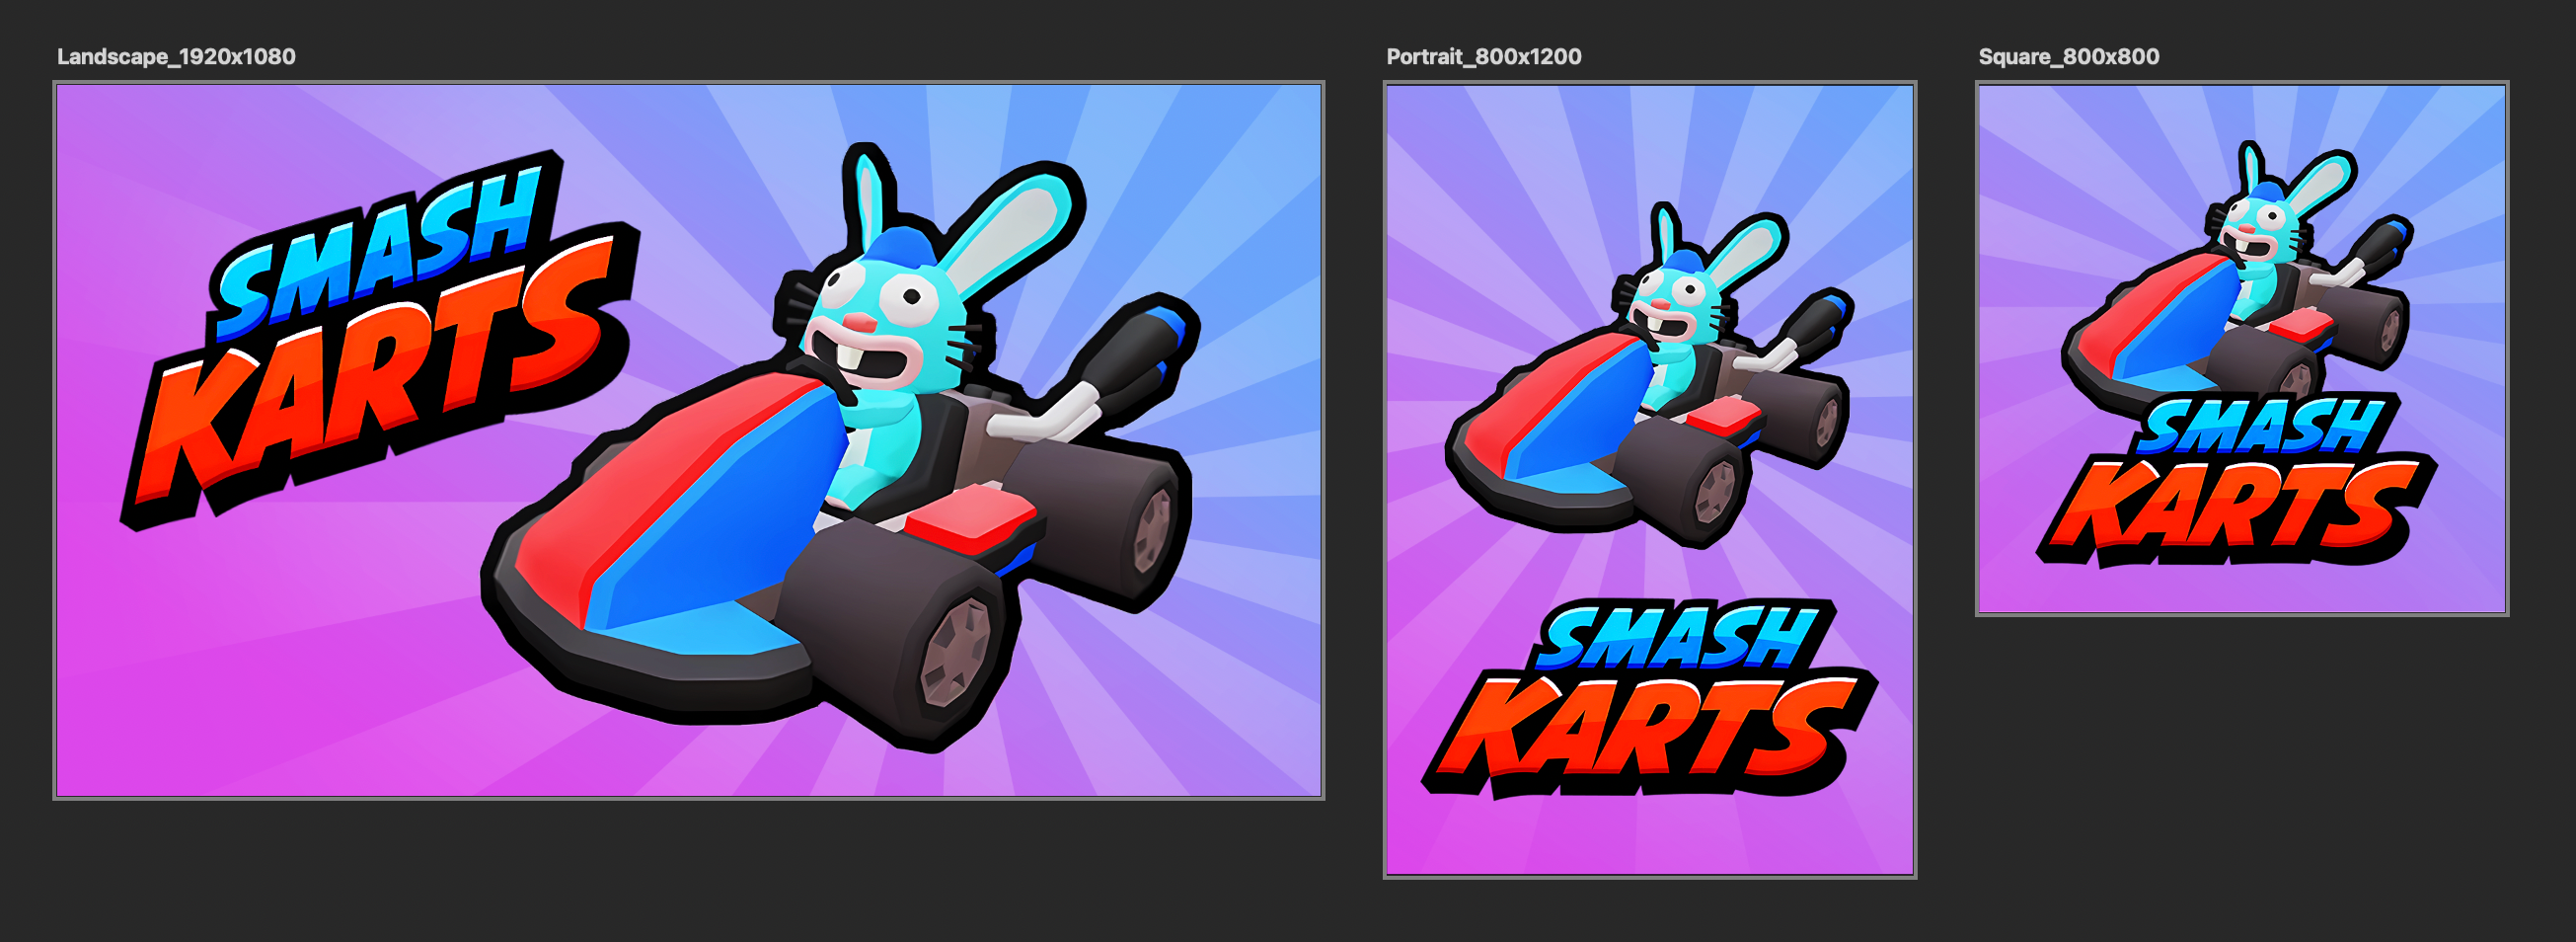 Smash Karts covers